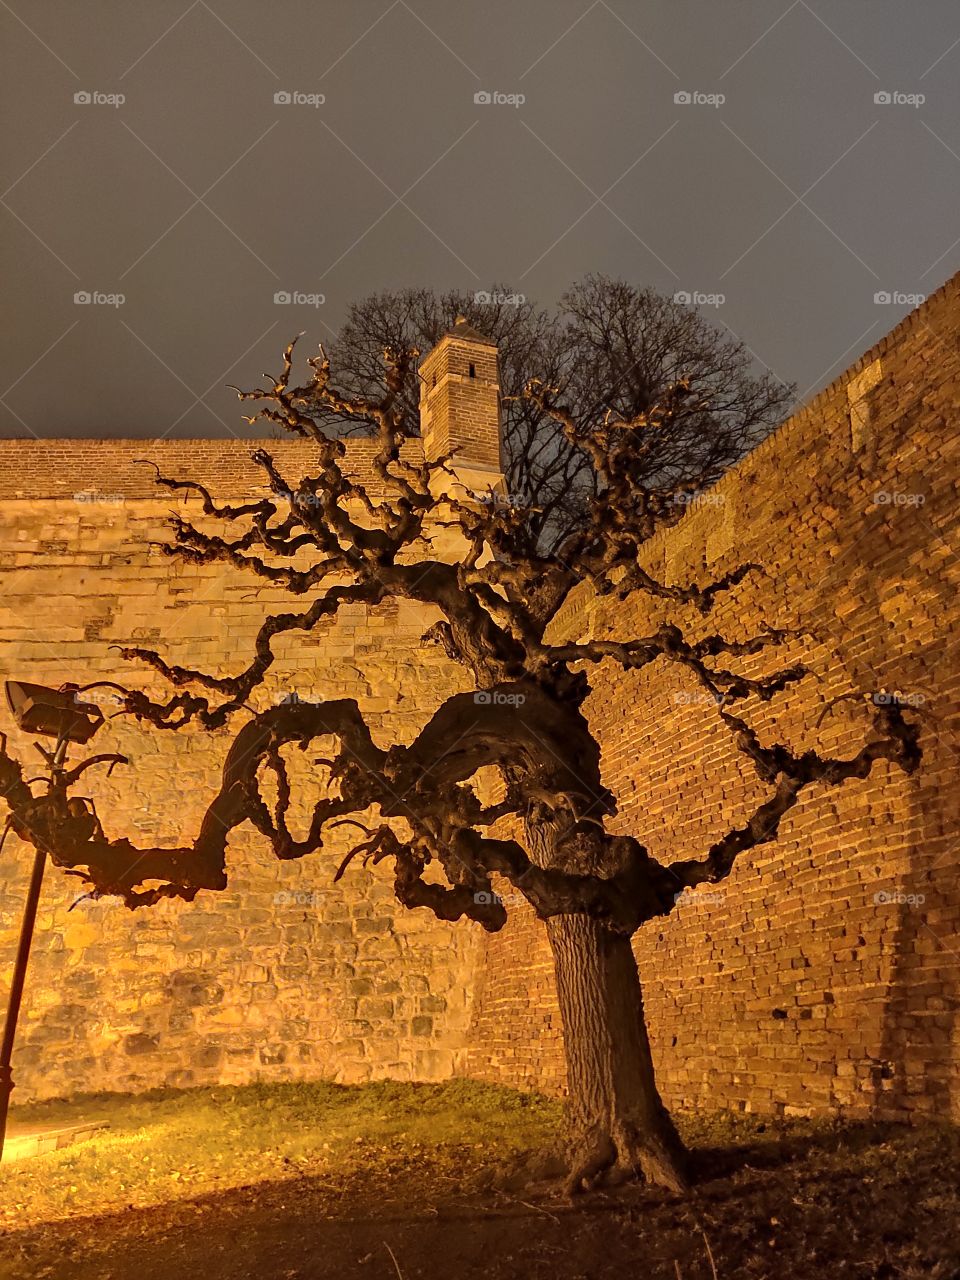 Belgrade Serbia night scenery tree in Kalemegdan fortress